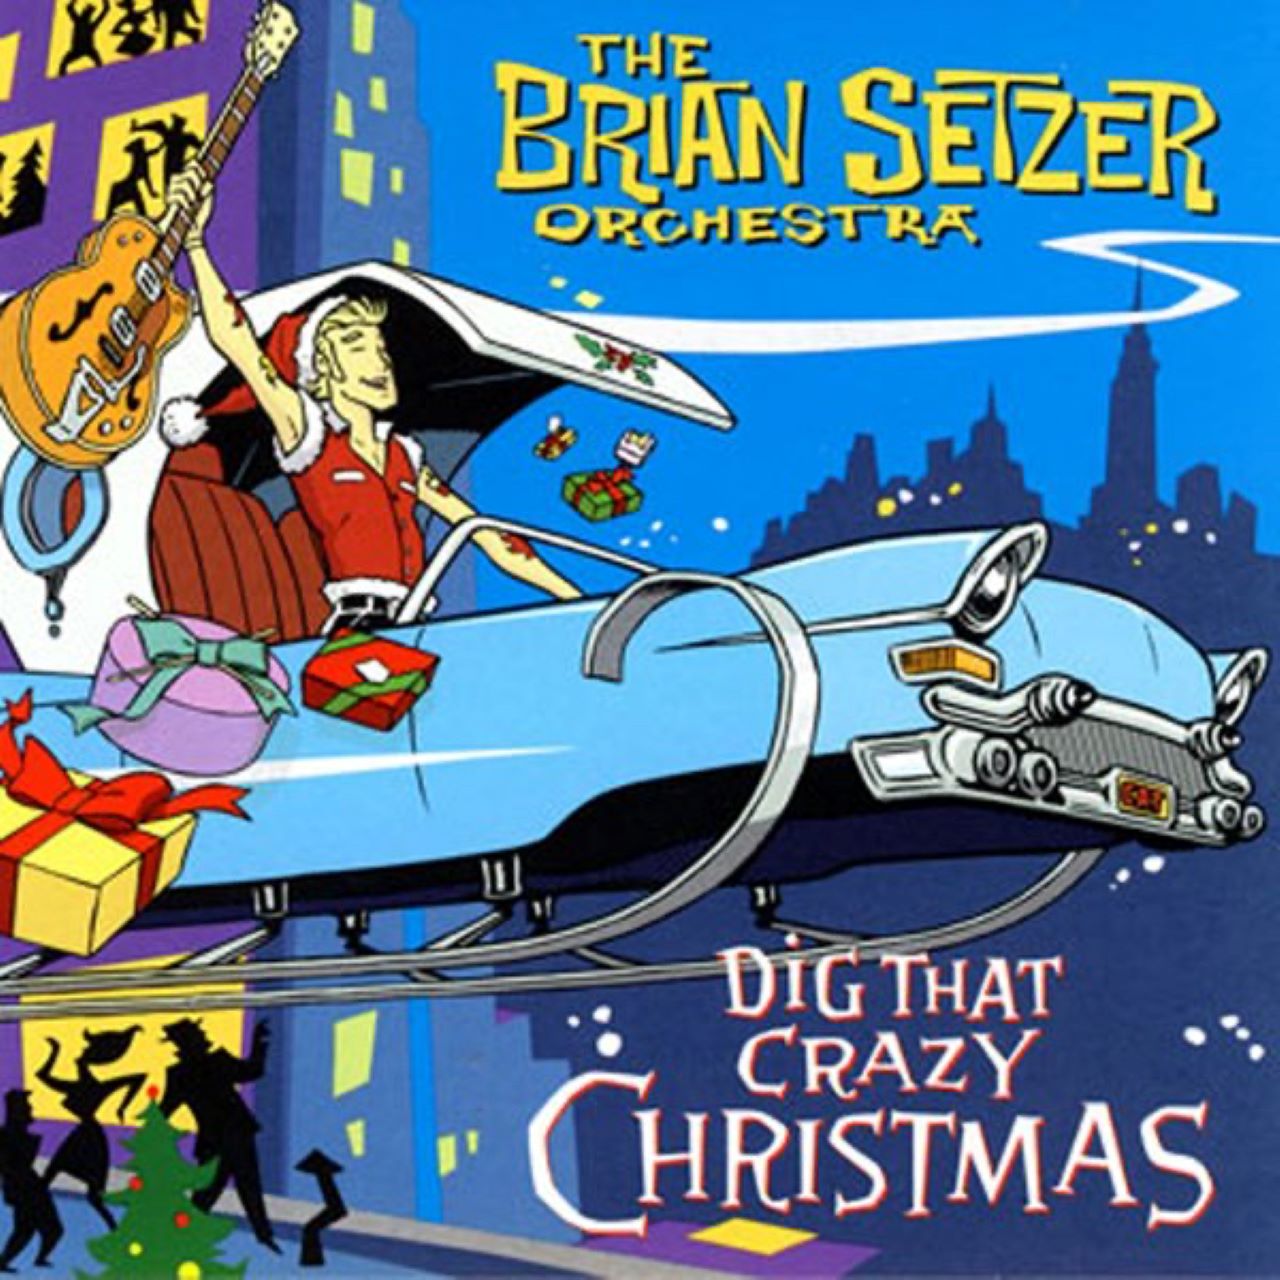 Brian Setzer - Dig That Crazy Christmas cover album